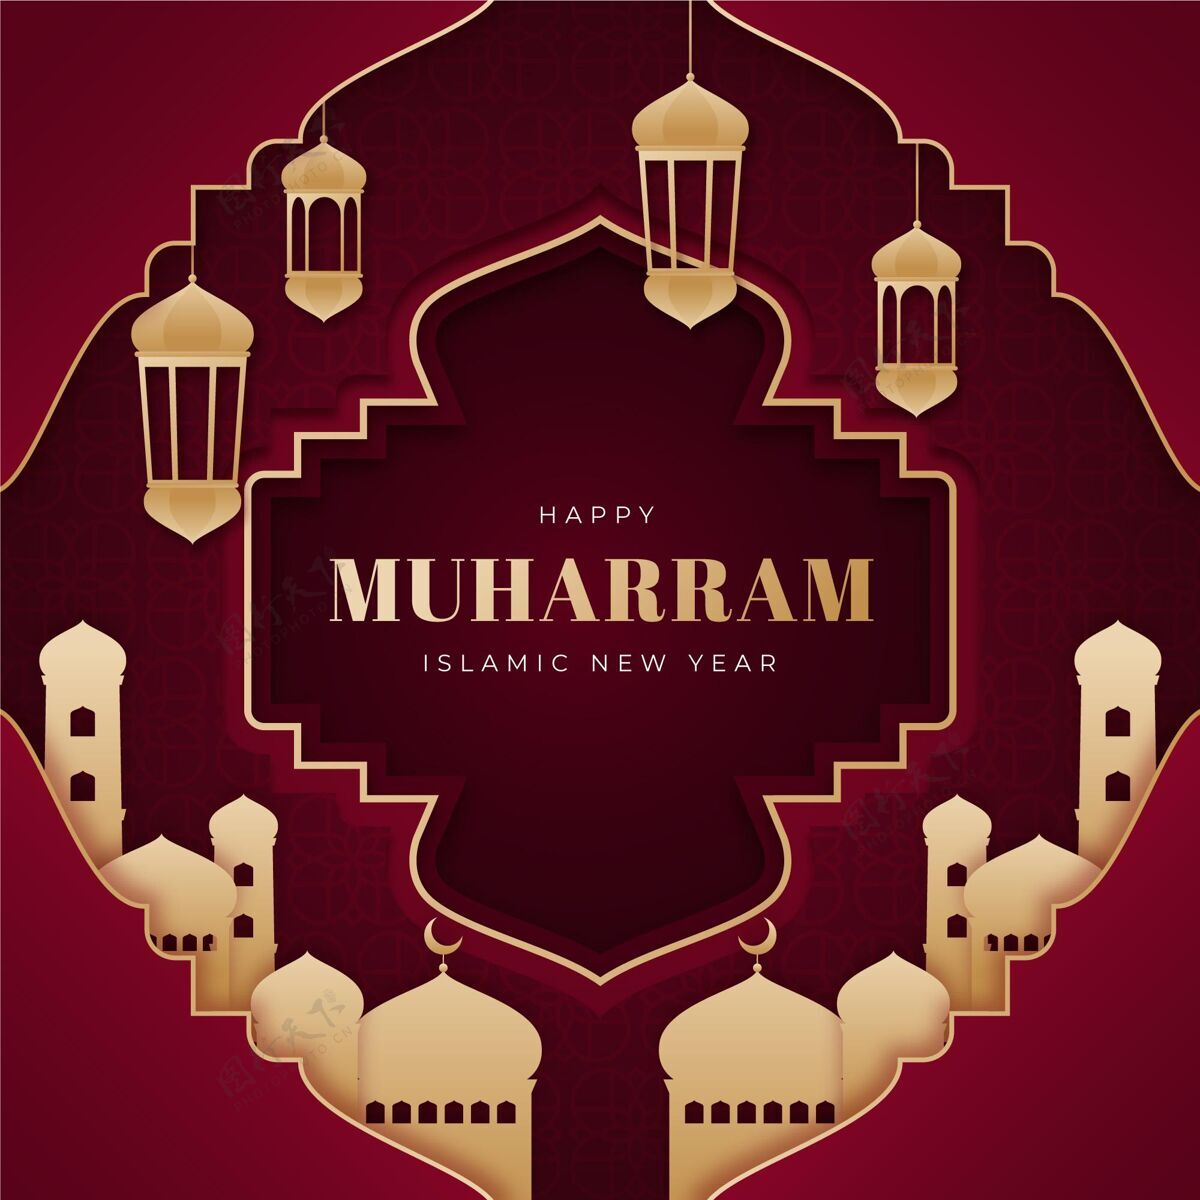 月纸张风格的muharram插图贺卡穆斯林纪念